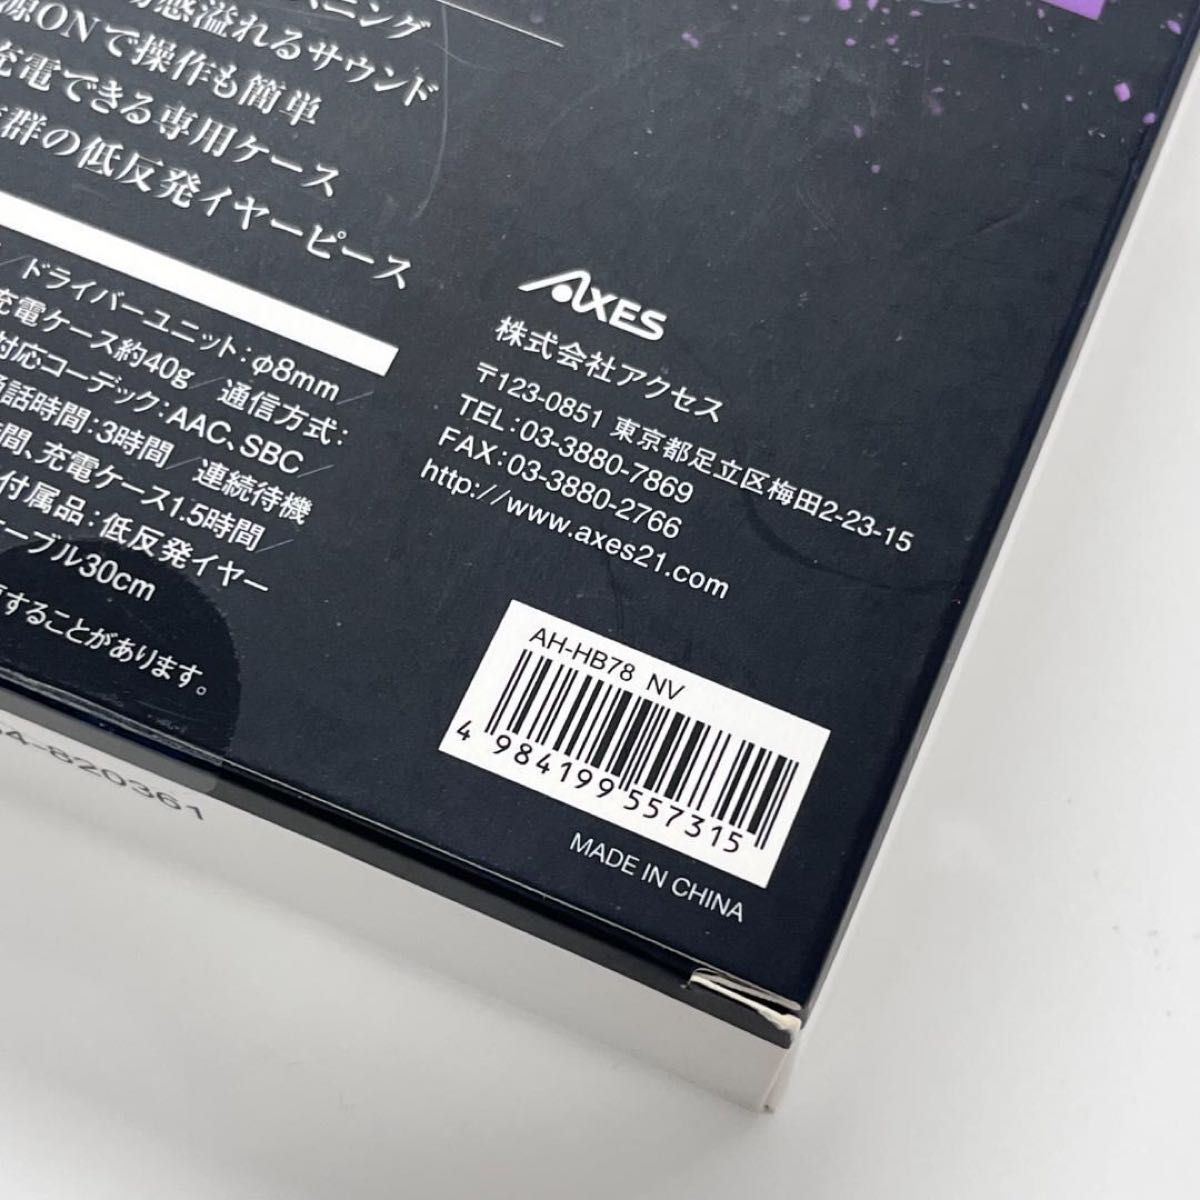 【新品未開封】AXES HDSS 完全ワイヤレスイヤホン AH-HB78 NV